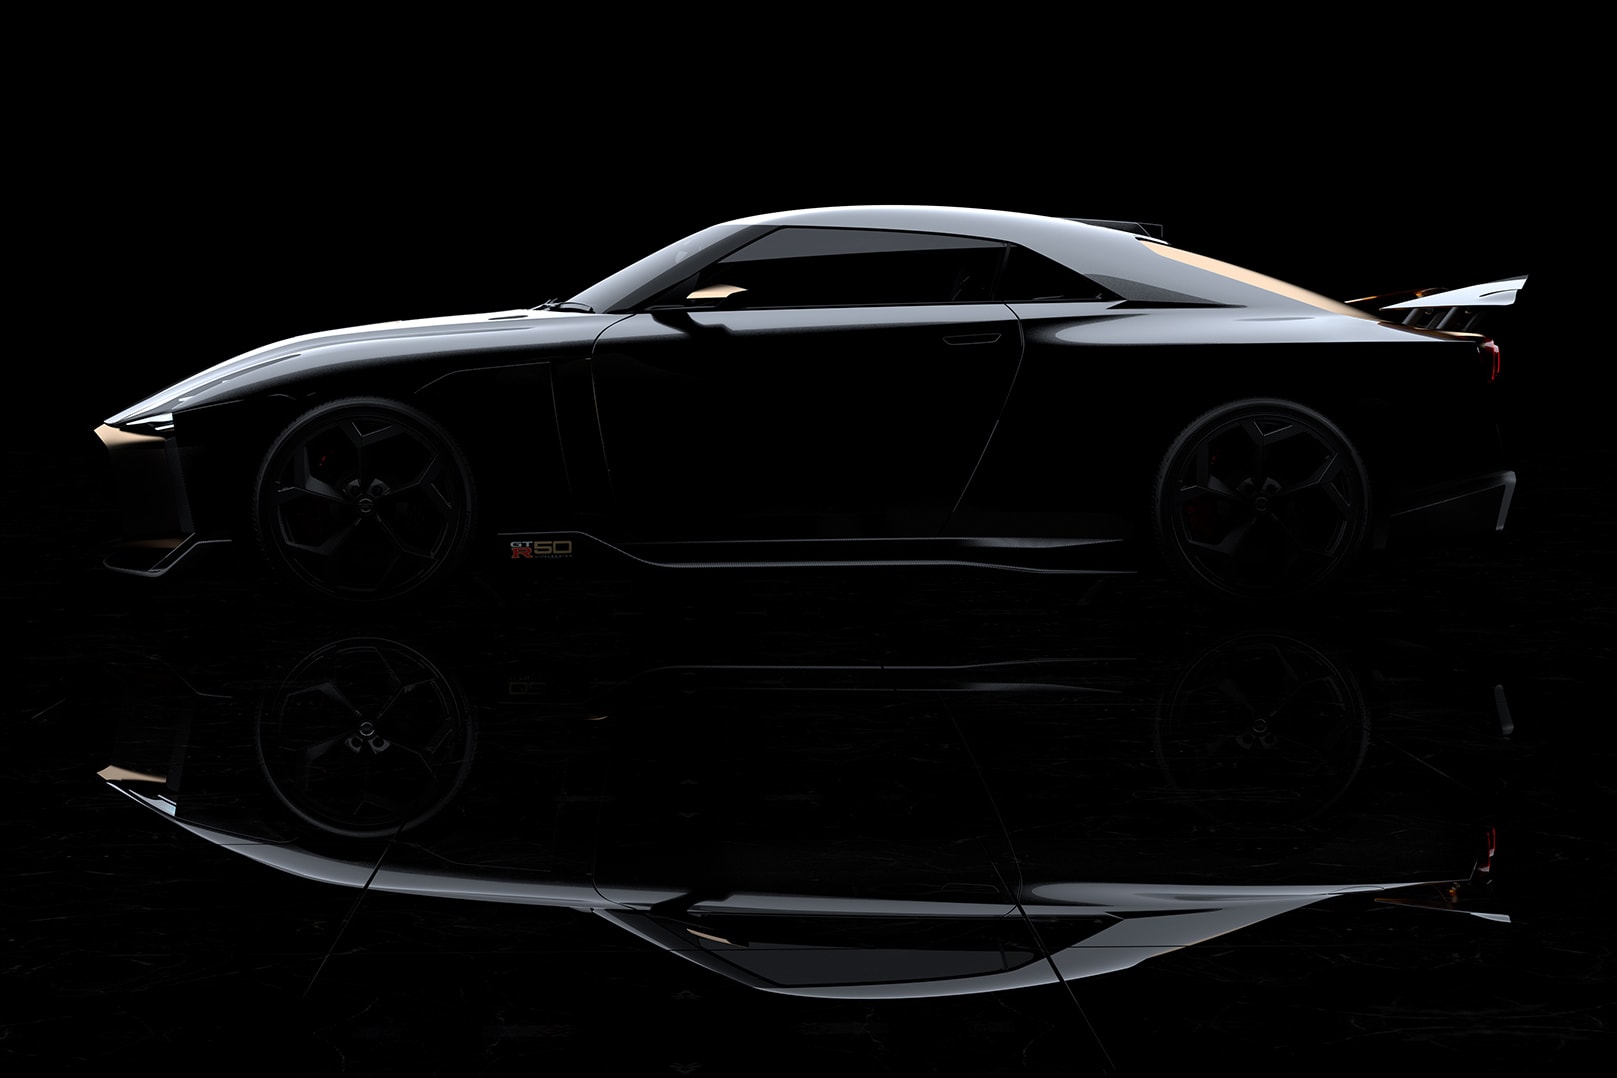 日產 Nissan 與 Italdesign 攜手打造 GT-R50 跑車